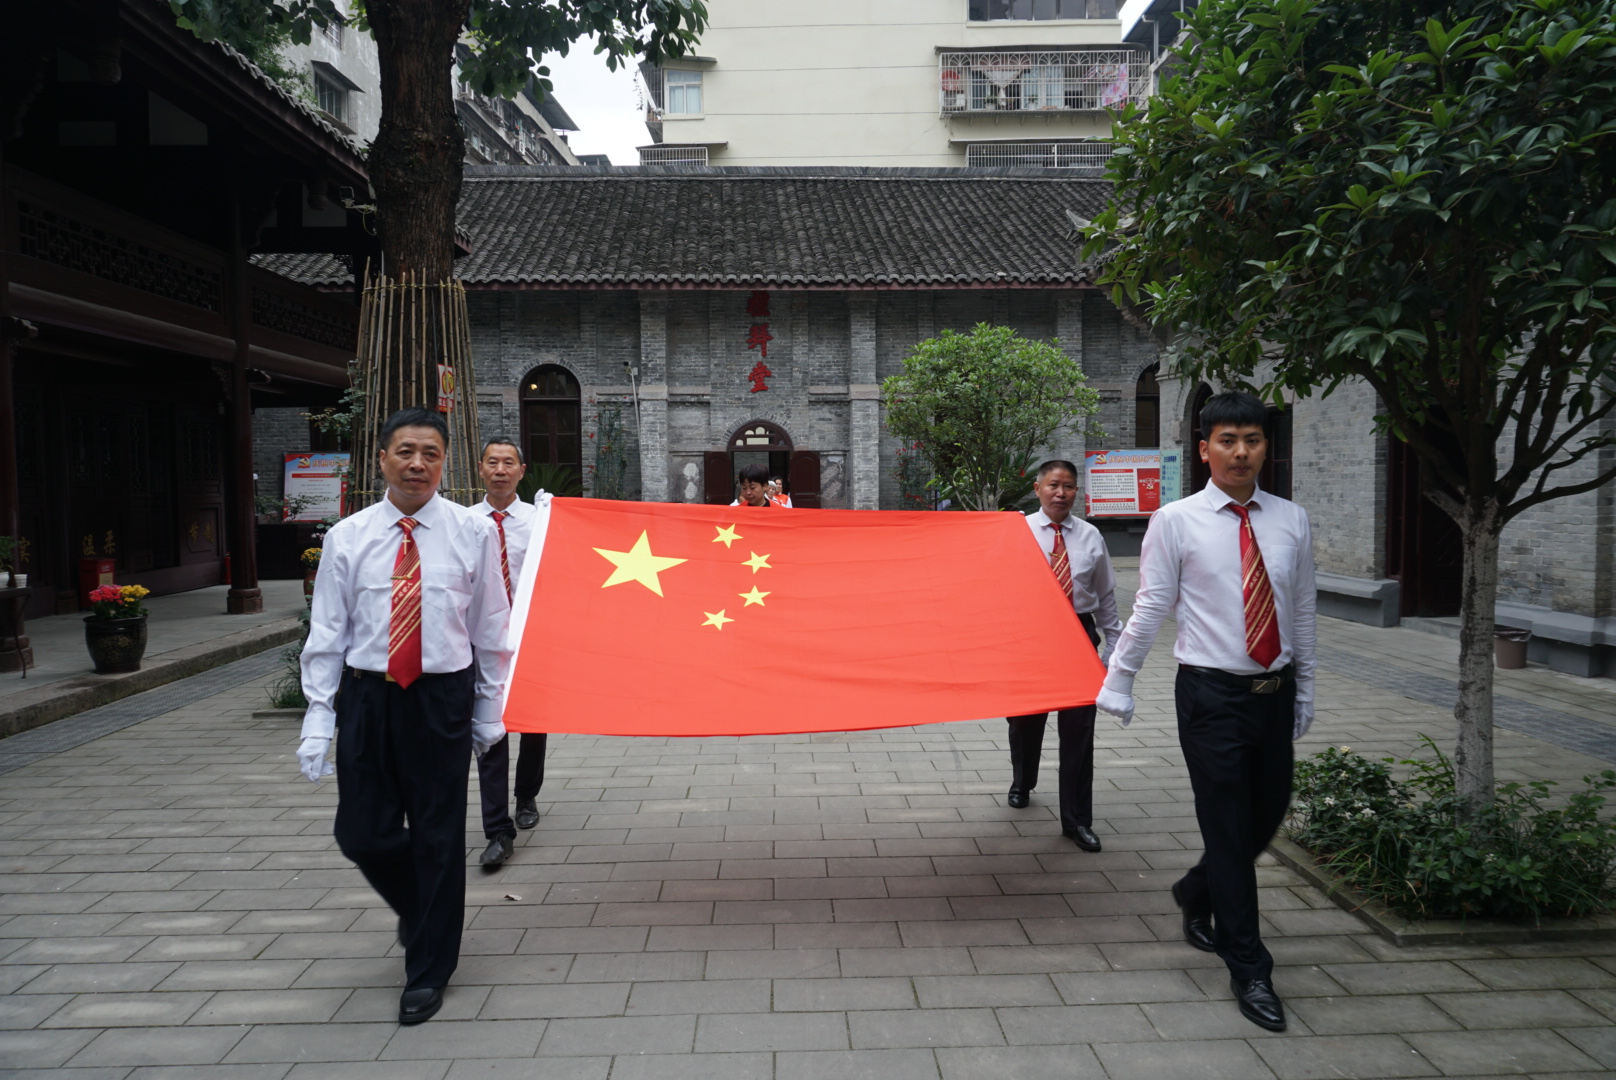 遂宁市基督教举行庆祝中国共产党建党100周年活动